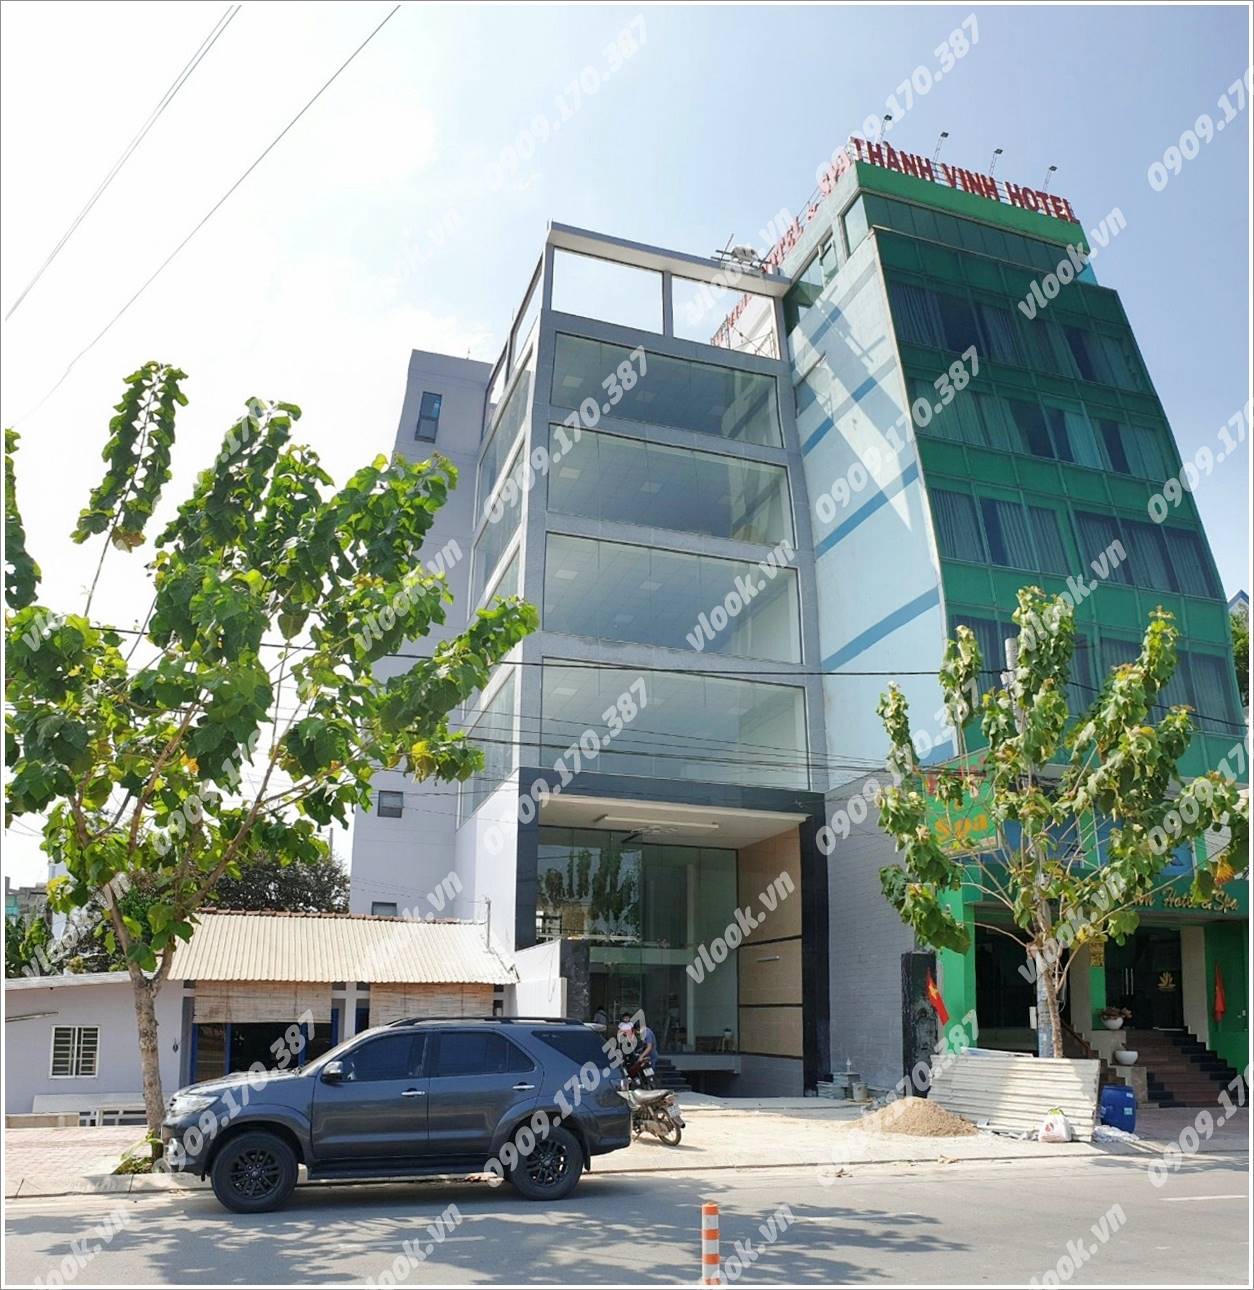 Cao ốc văn phòng cho thuê Phước Long A Building Xa lộ Hà Nội, Quận 9, TP.HCM - vlook.vn